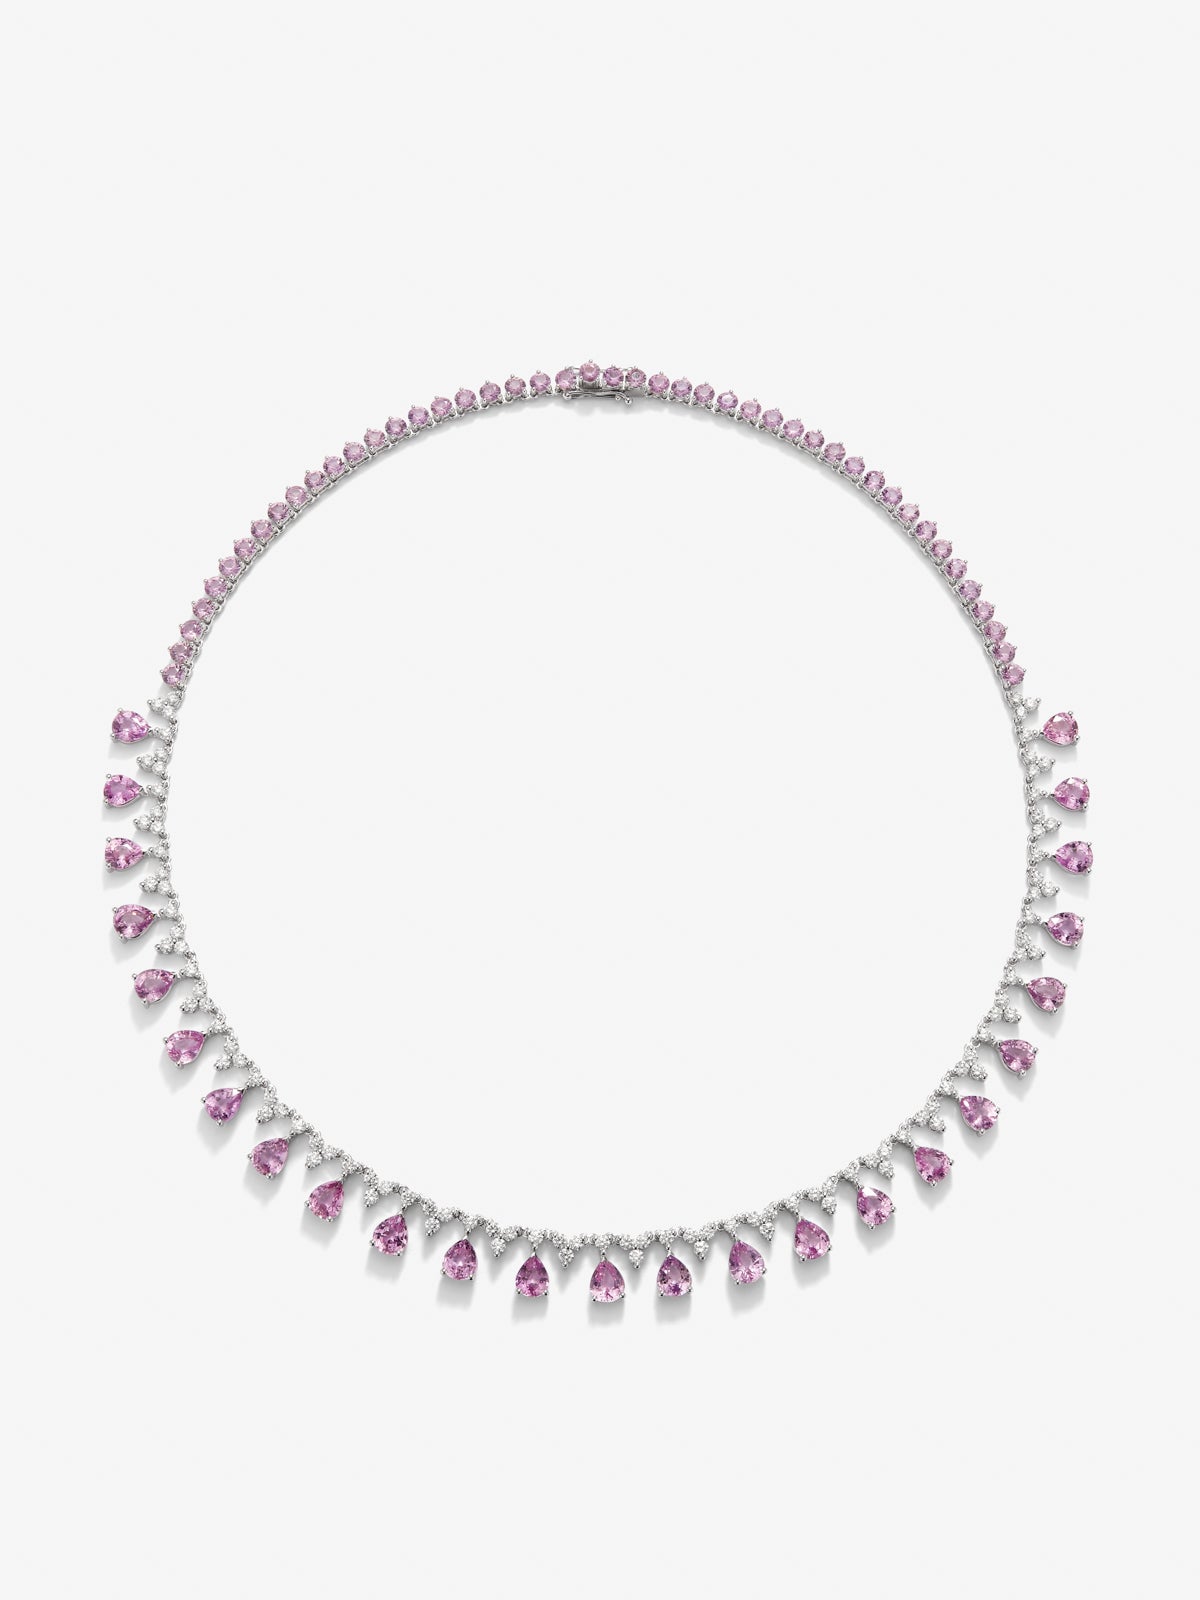 Collar rivière de oro blanco de 18K con zafiros rosas en talla pera y talla brillante de 26,89 cts y diamantes blancos en talla brillante de 3,85 cts